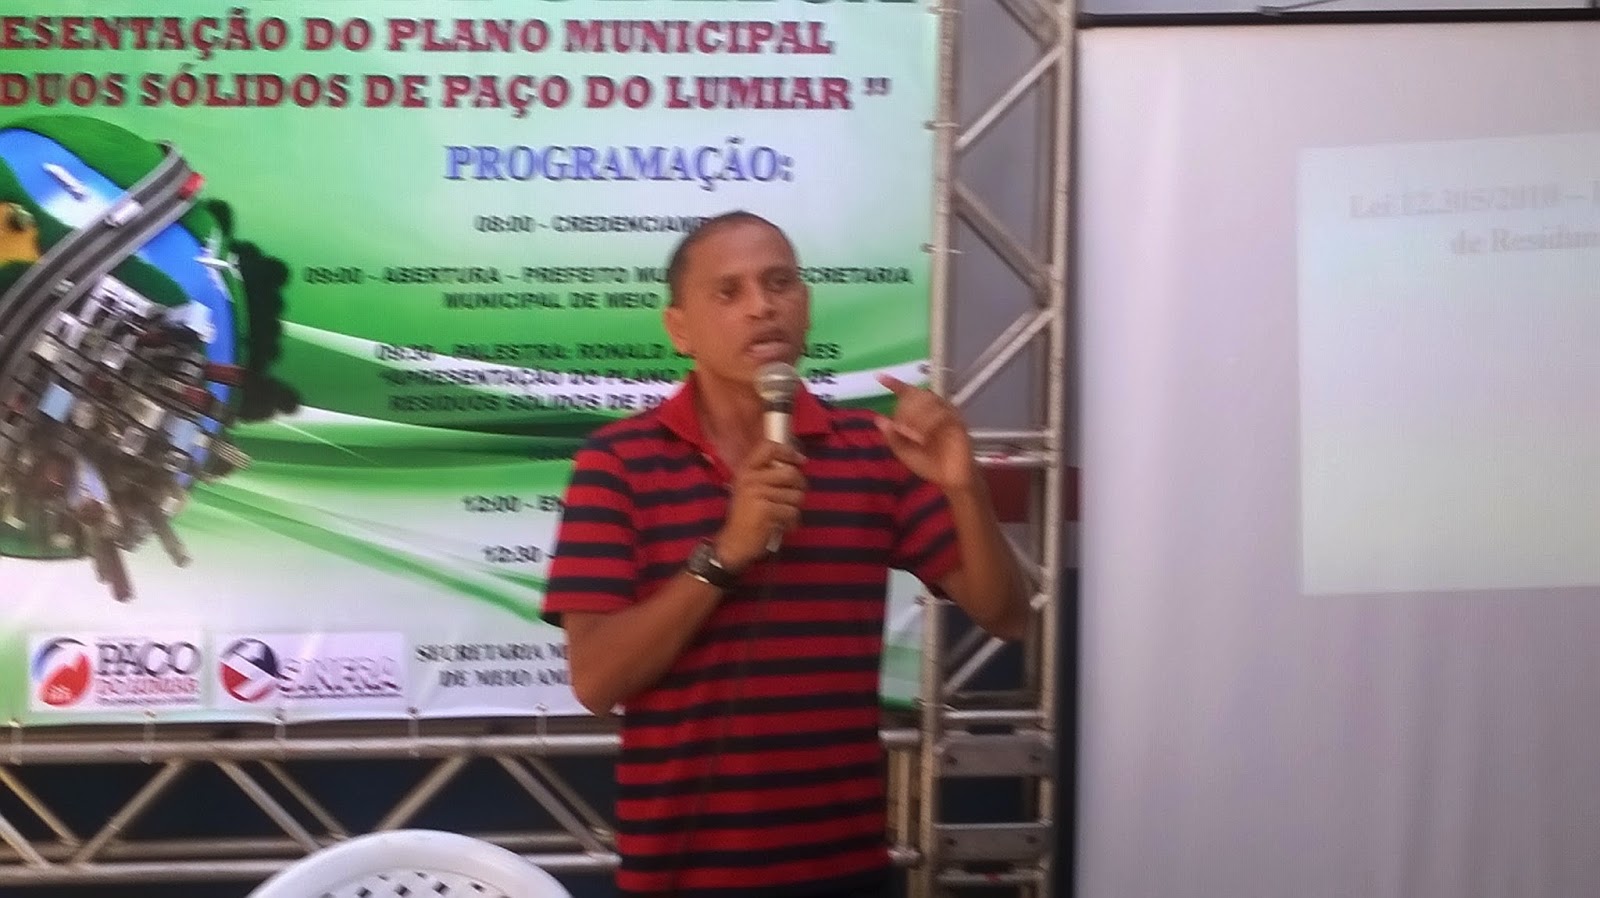 Prefeitura de Paço do Lumiar debate diretamente com a população o  Plano Municipal de Gerenciamento de Resíduos Sólidos e a Implantação do Aterro Sanitário no Município.